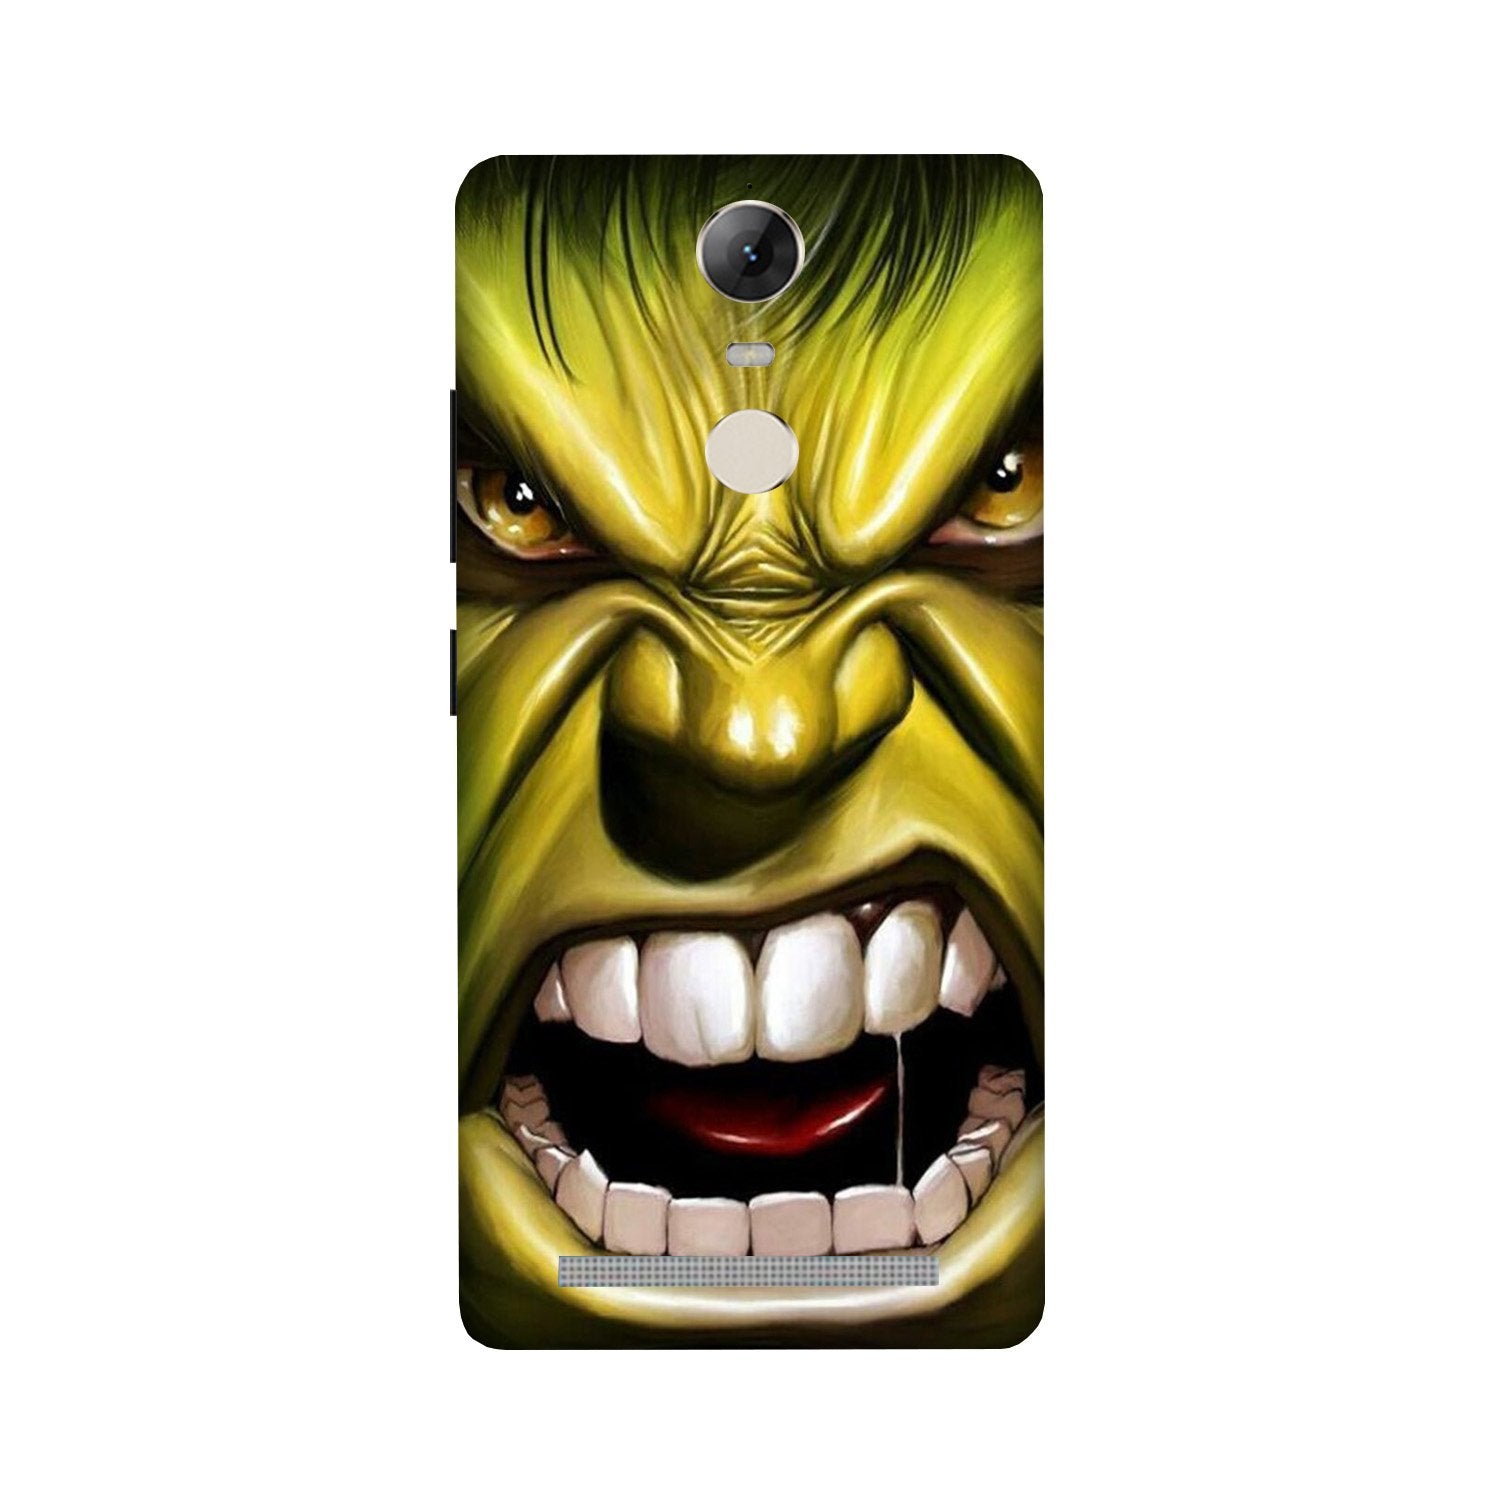 Hulk Superhero Case for Lenovo Vibe K5 Note(Design - 121)